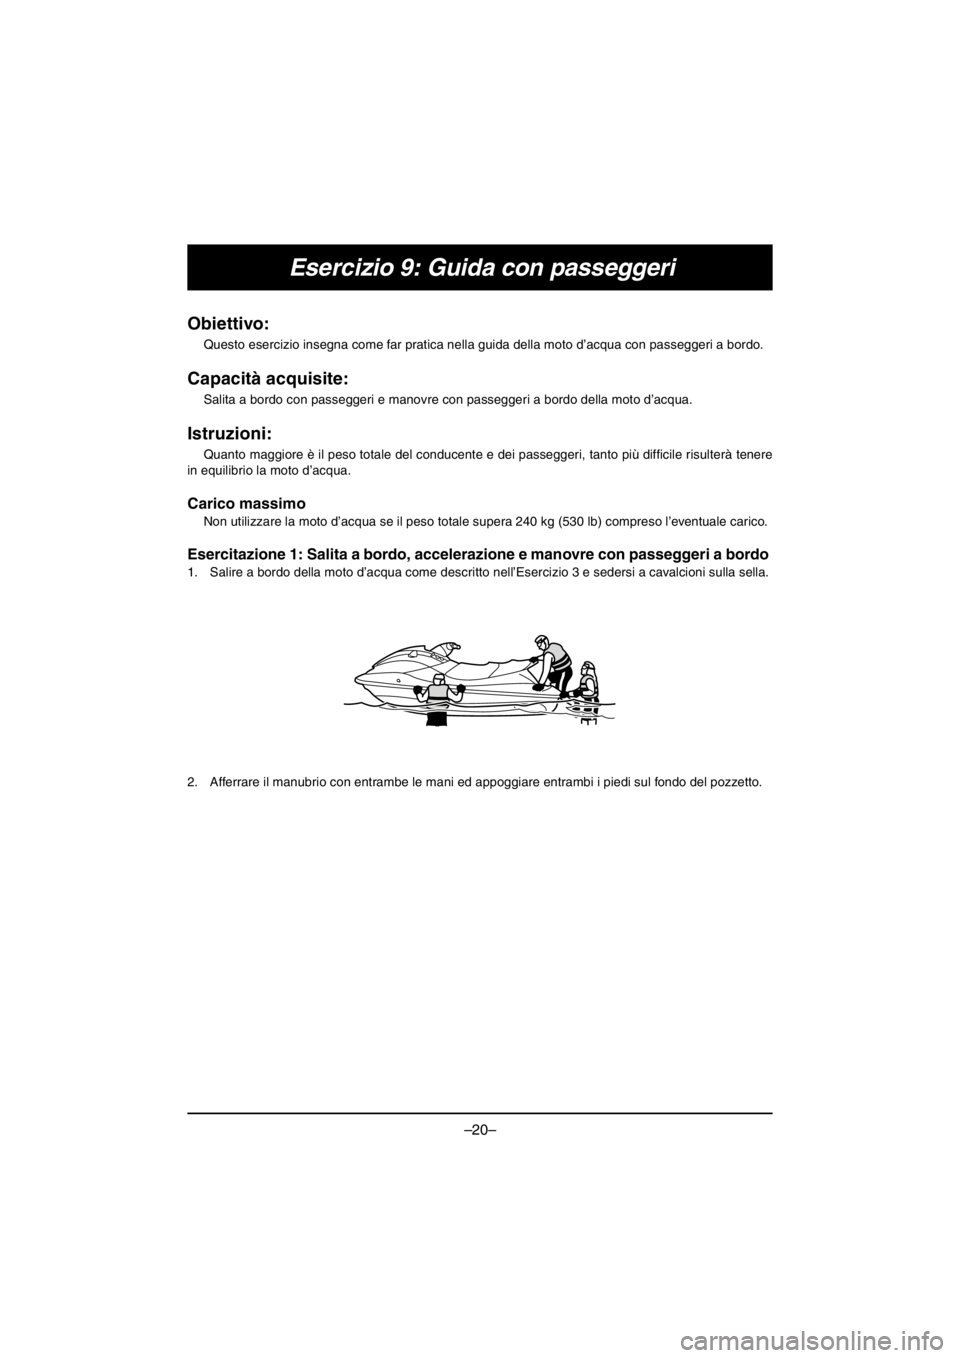 YAMAHA V1 2016  Owners Manual –20–
Esercizio 9: Guida con passeggeri
Obiettivo: 
Questo esercizio insegna come far pratica nella guida della moto d’acqua con passeggeri a bordo.
Capacità acquisite: 
Salita a bordo con passe